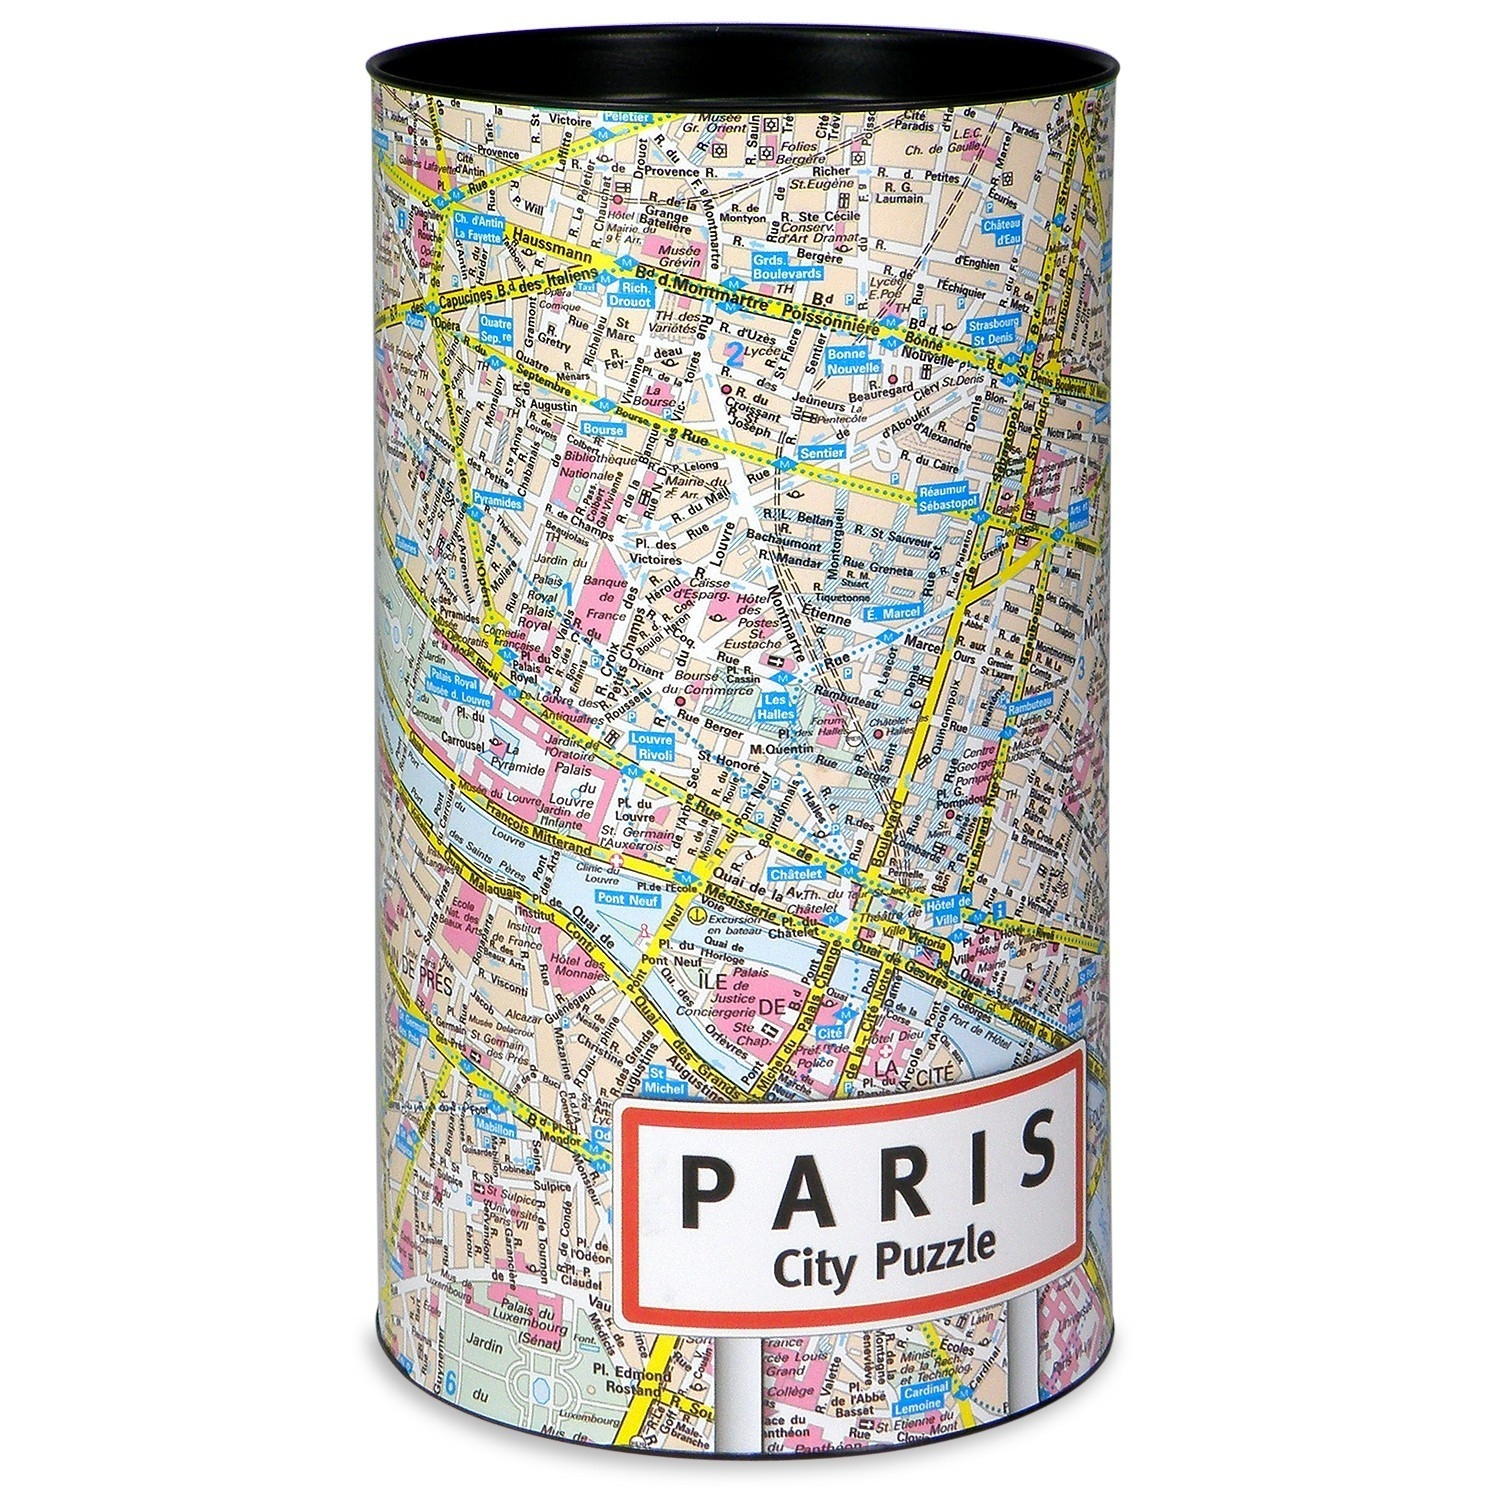 City Puzzle - Paris